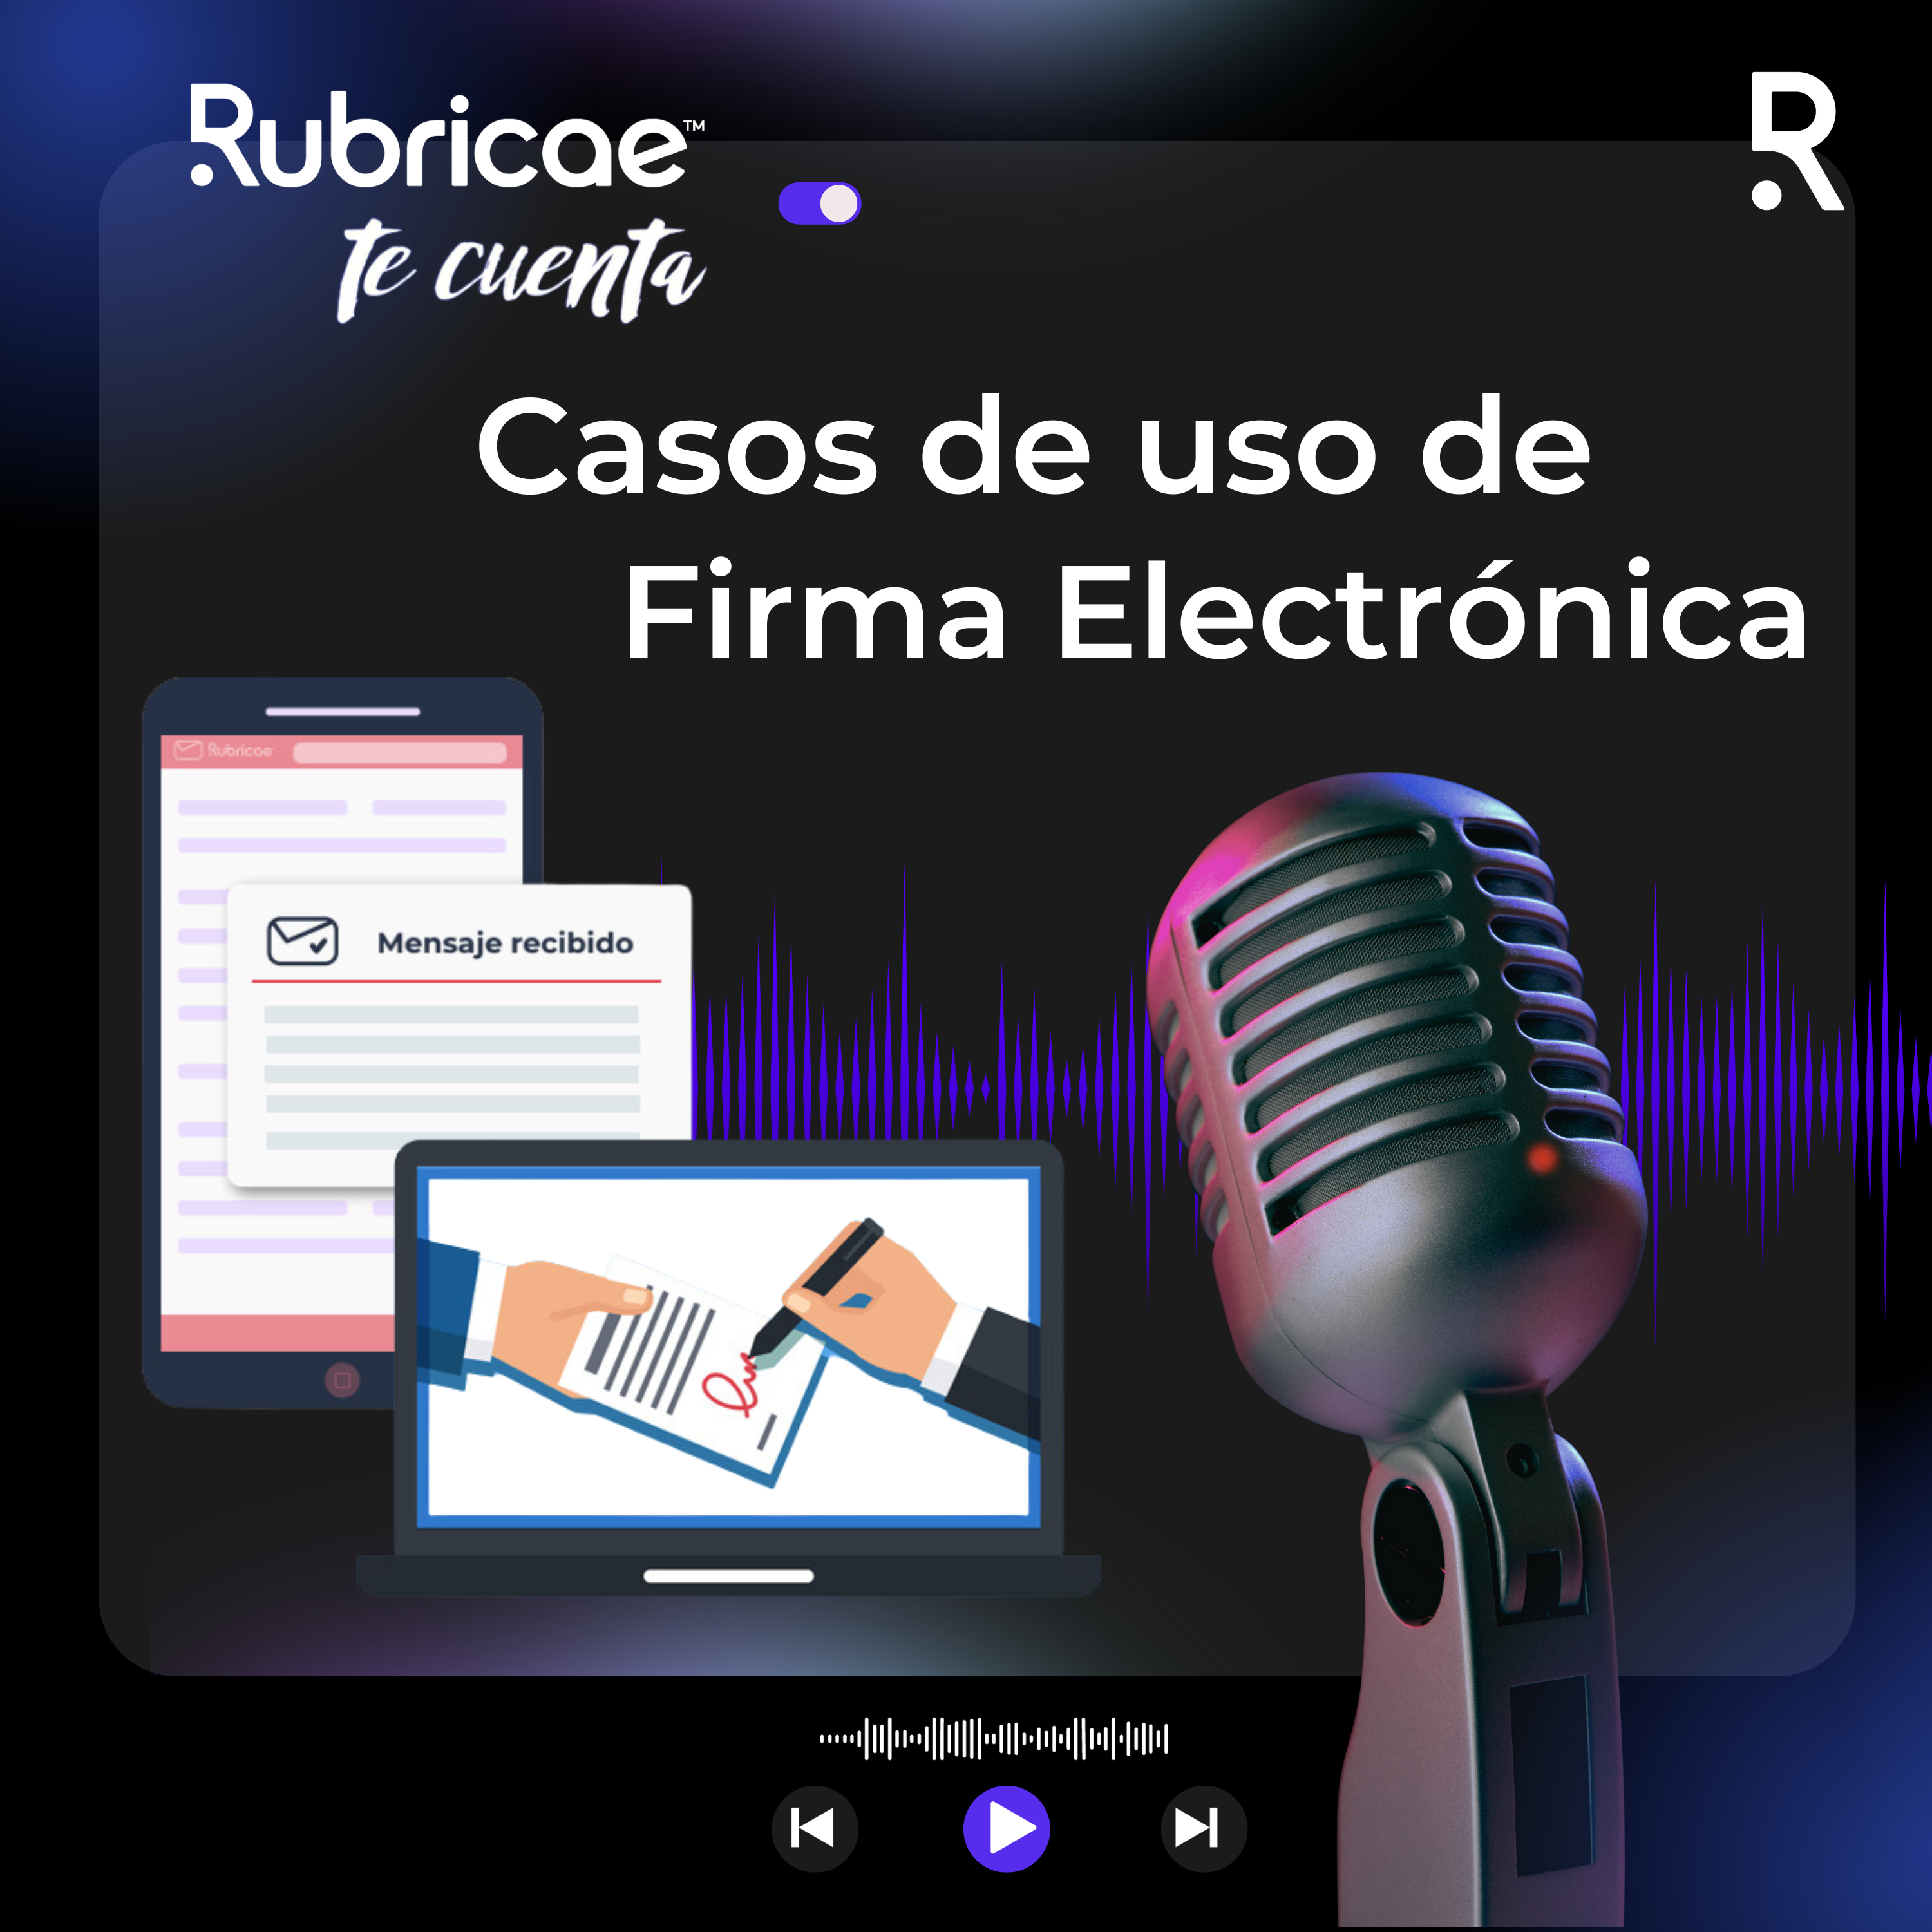 Rubricae Te Cuenta Podcast Casos de uso de Firma electrónica